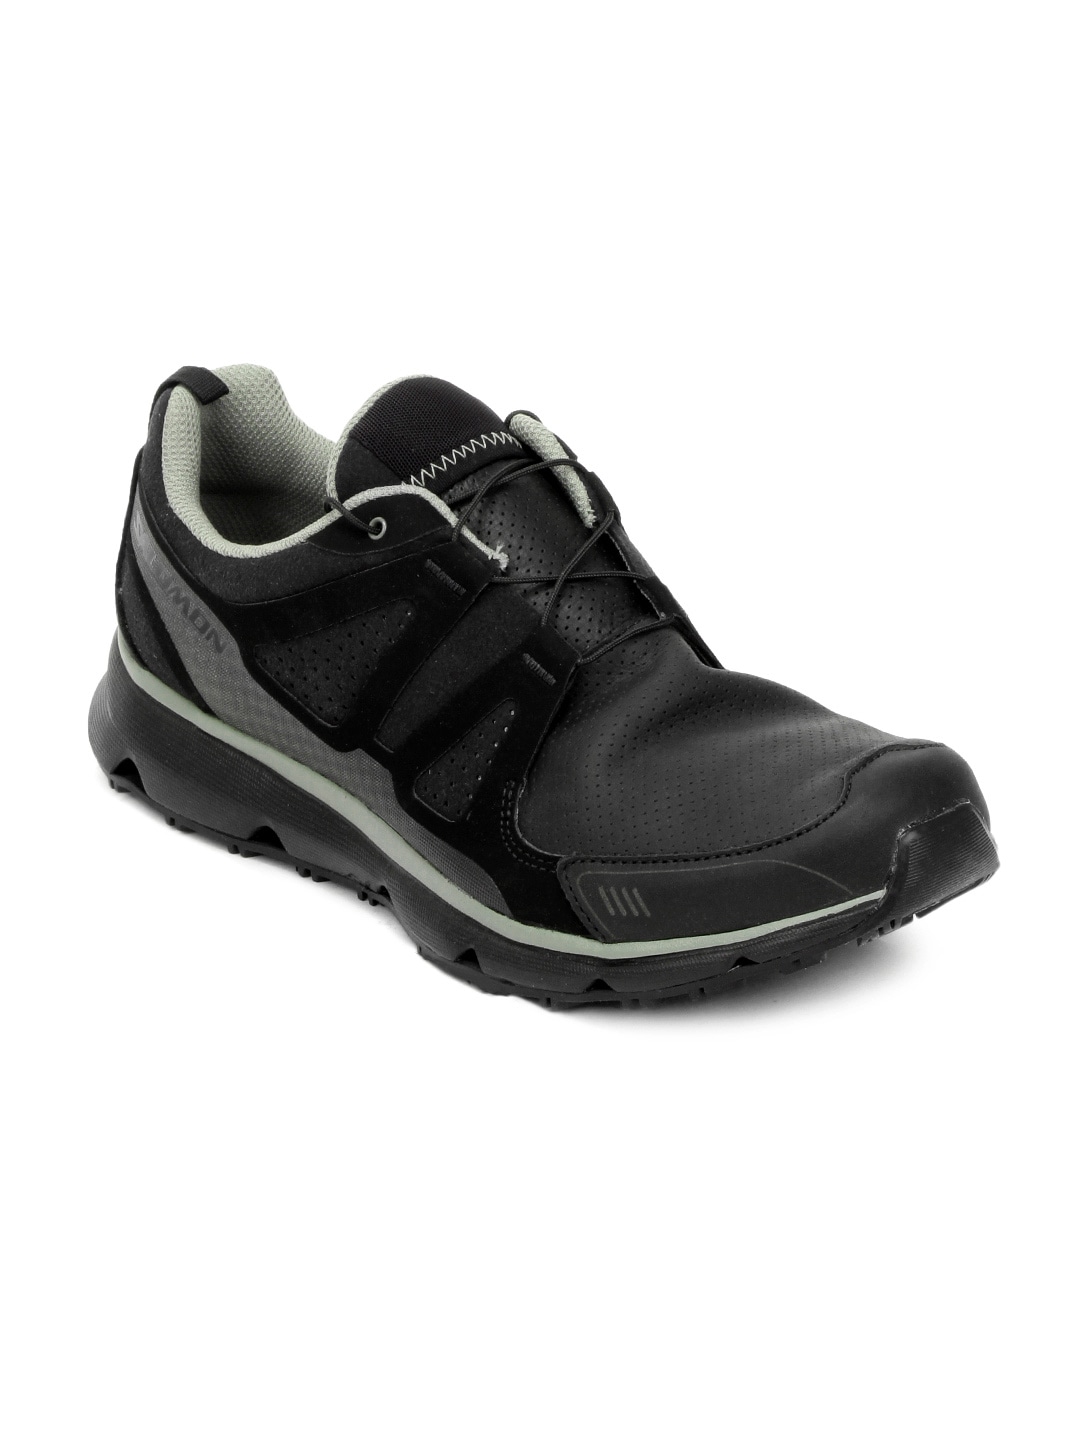 Salomon Men Black S-wind Premium Sports Shoes